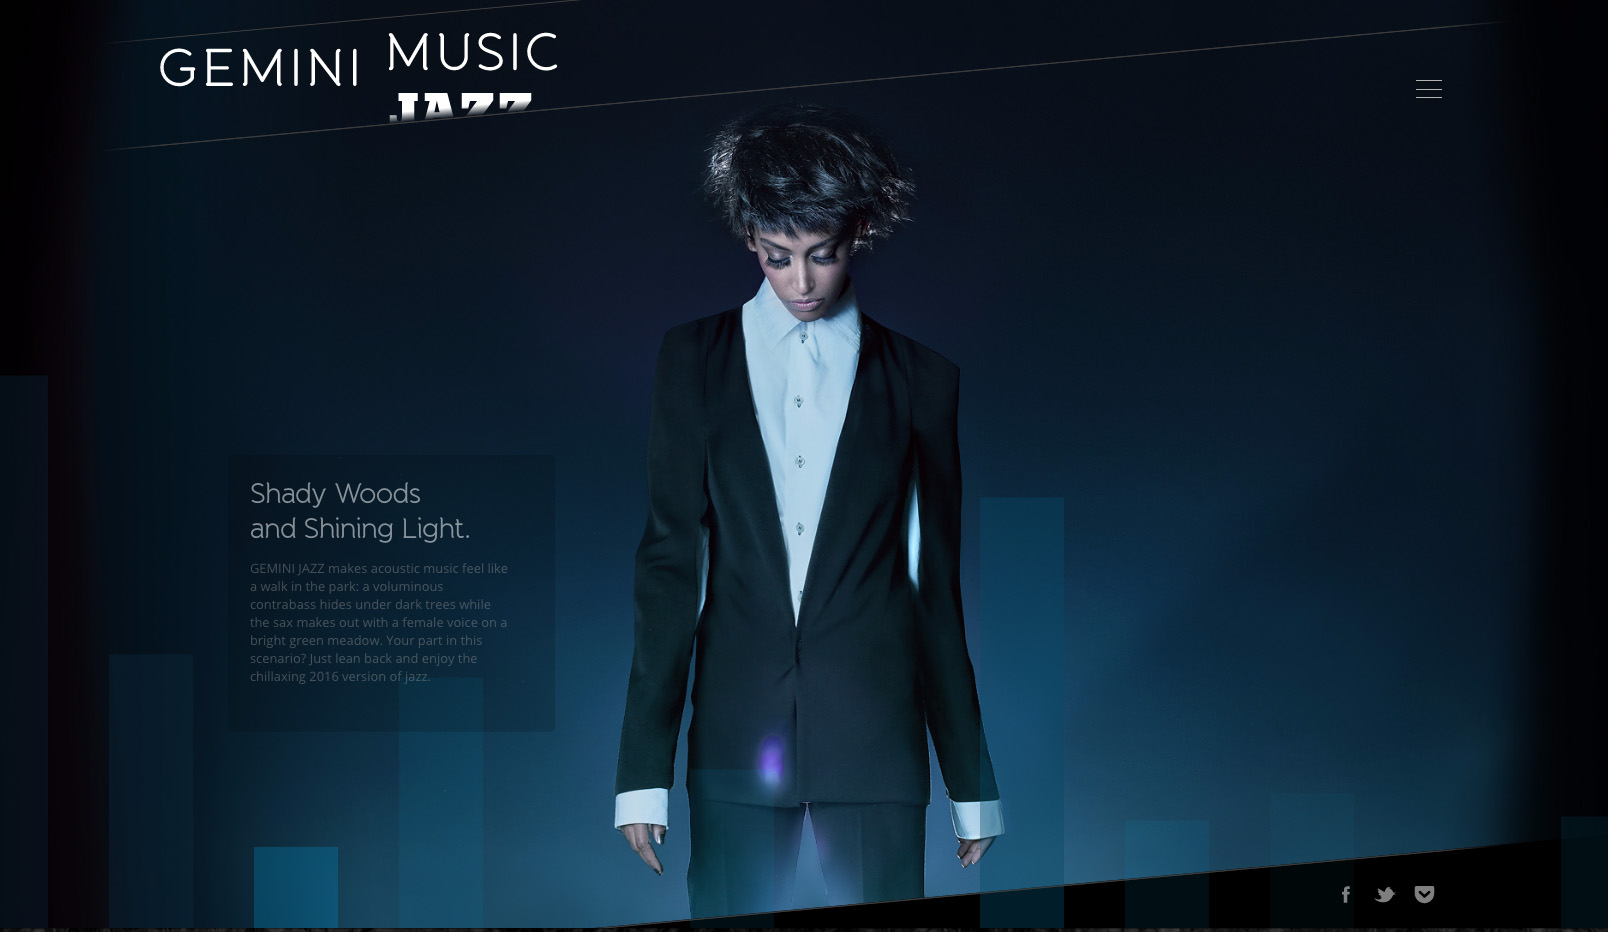 Gemini Music website